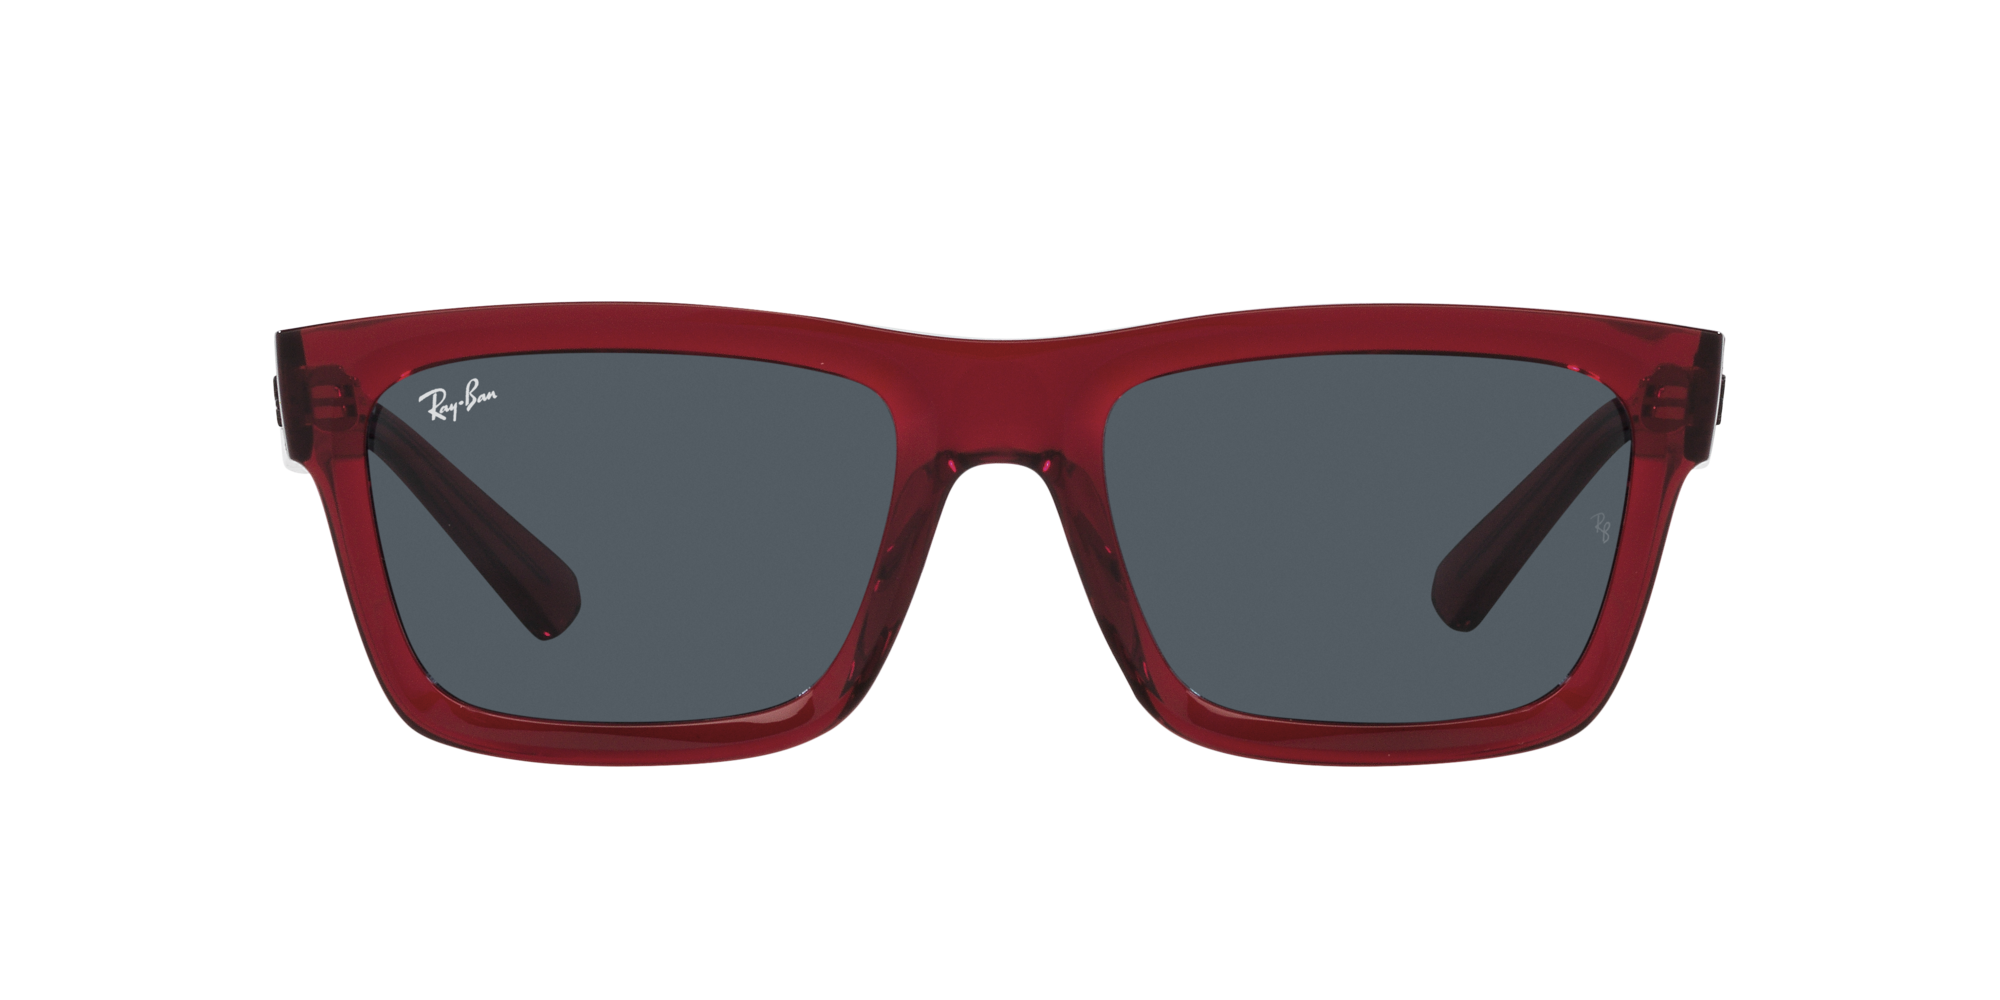 Buy RED MONK Wayfarer Sunglasses Grey For Boys & Girls Online @ Best Prices  in India | Flipkart.com